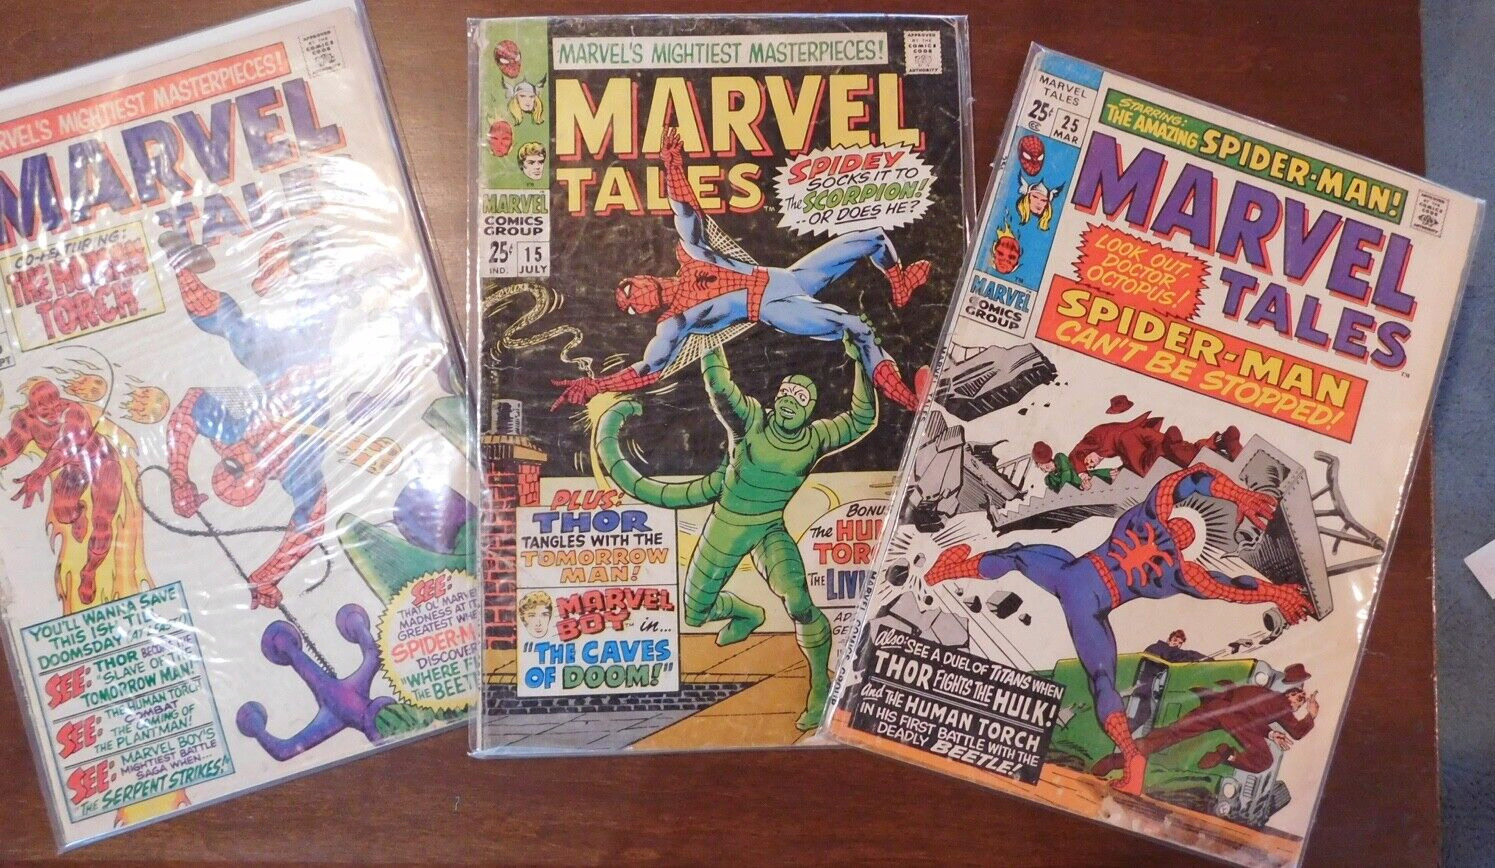 Marvel Tales (Marvel, 1966) 3 issue LOT  # 15, 16, & 25 Spider-Man 1967 1968 - G